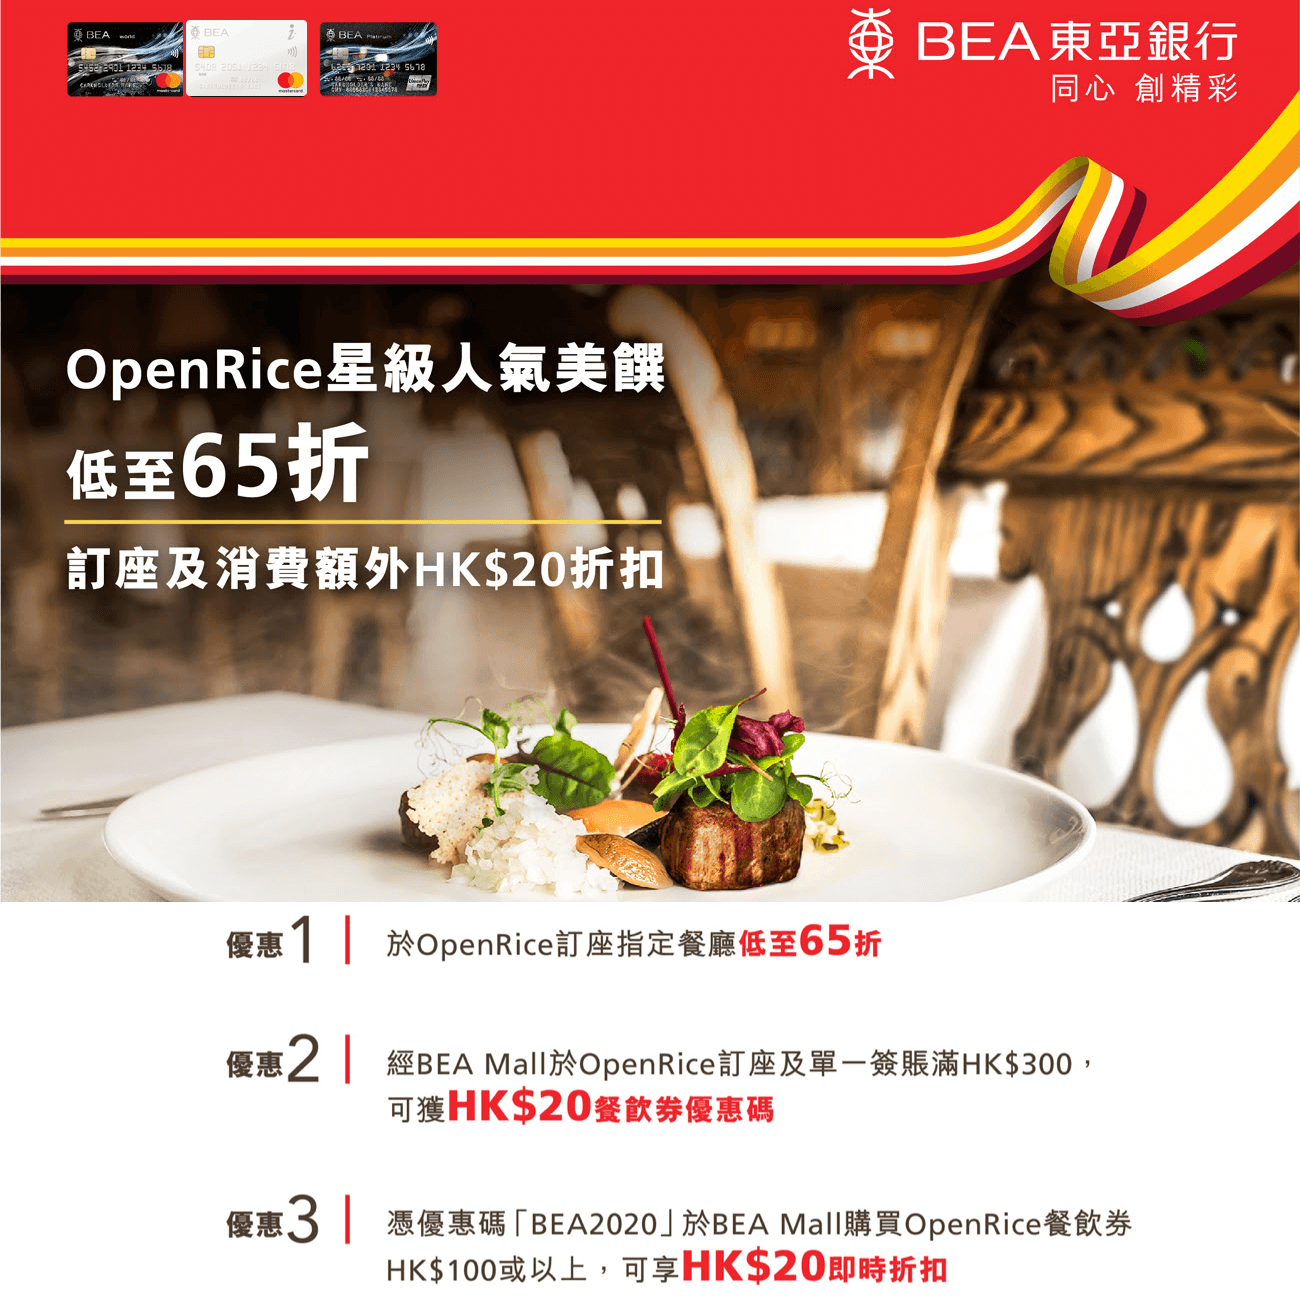 東亞信用卡OpenRice優惠！指定餐廳低至65折 + 訂座HK$300減HK$20 + 購買餐飲券HK$100減HK$20